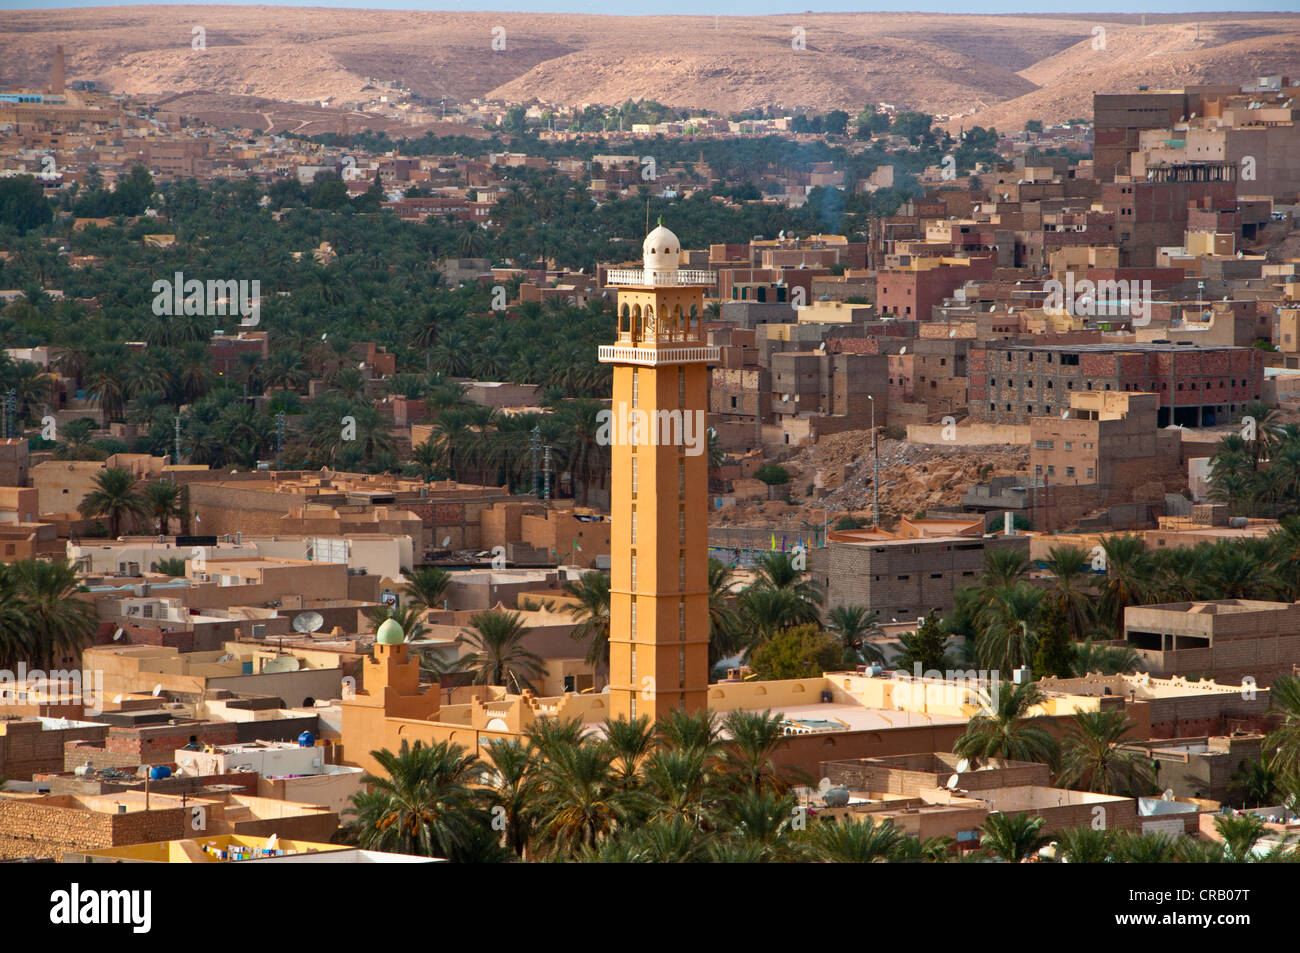 Vue sur les villages de l'UNESCO World Heritage Site M'zab, l'Algérie, l'Afrique Banque D'Images